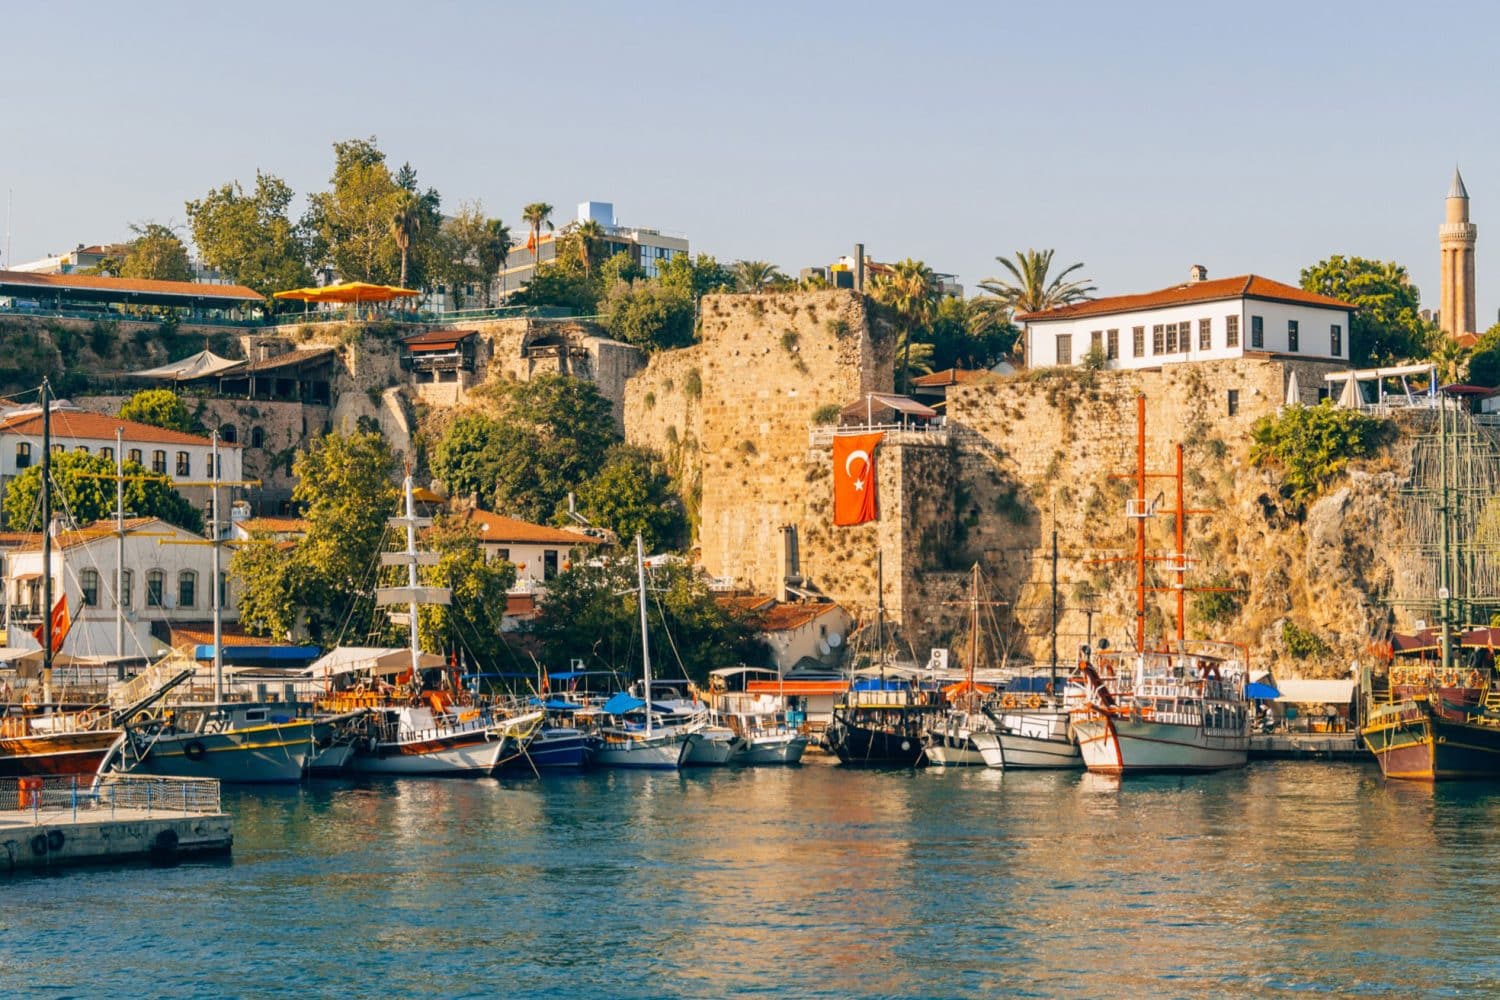 Tour Photos: Antalya old city Kaleici marina